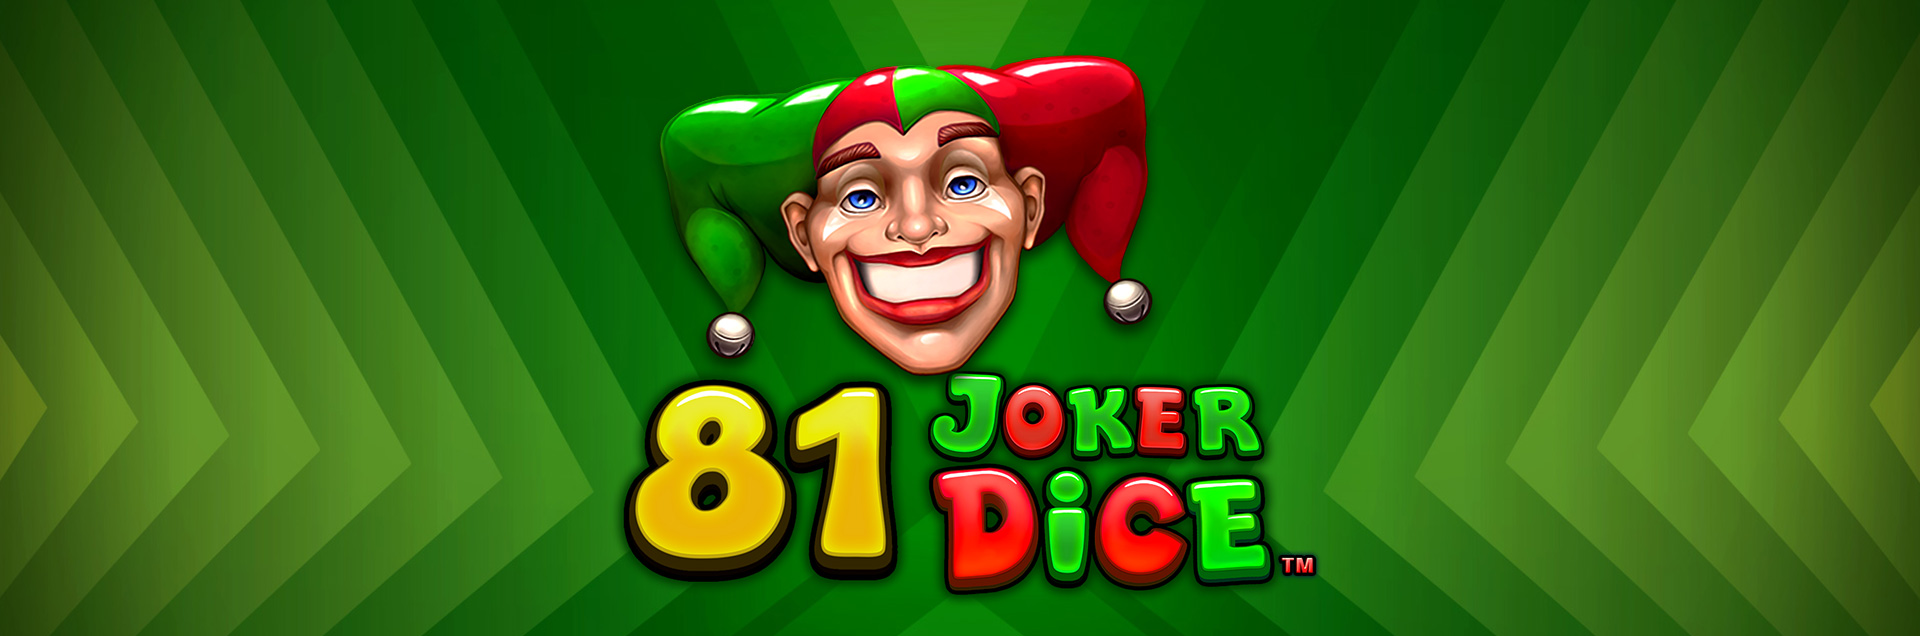 81 Joker Dice header games